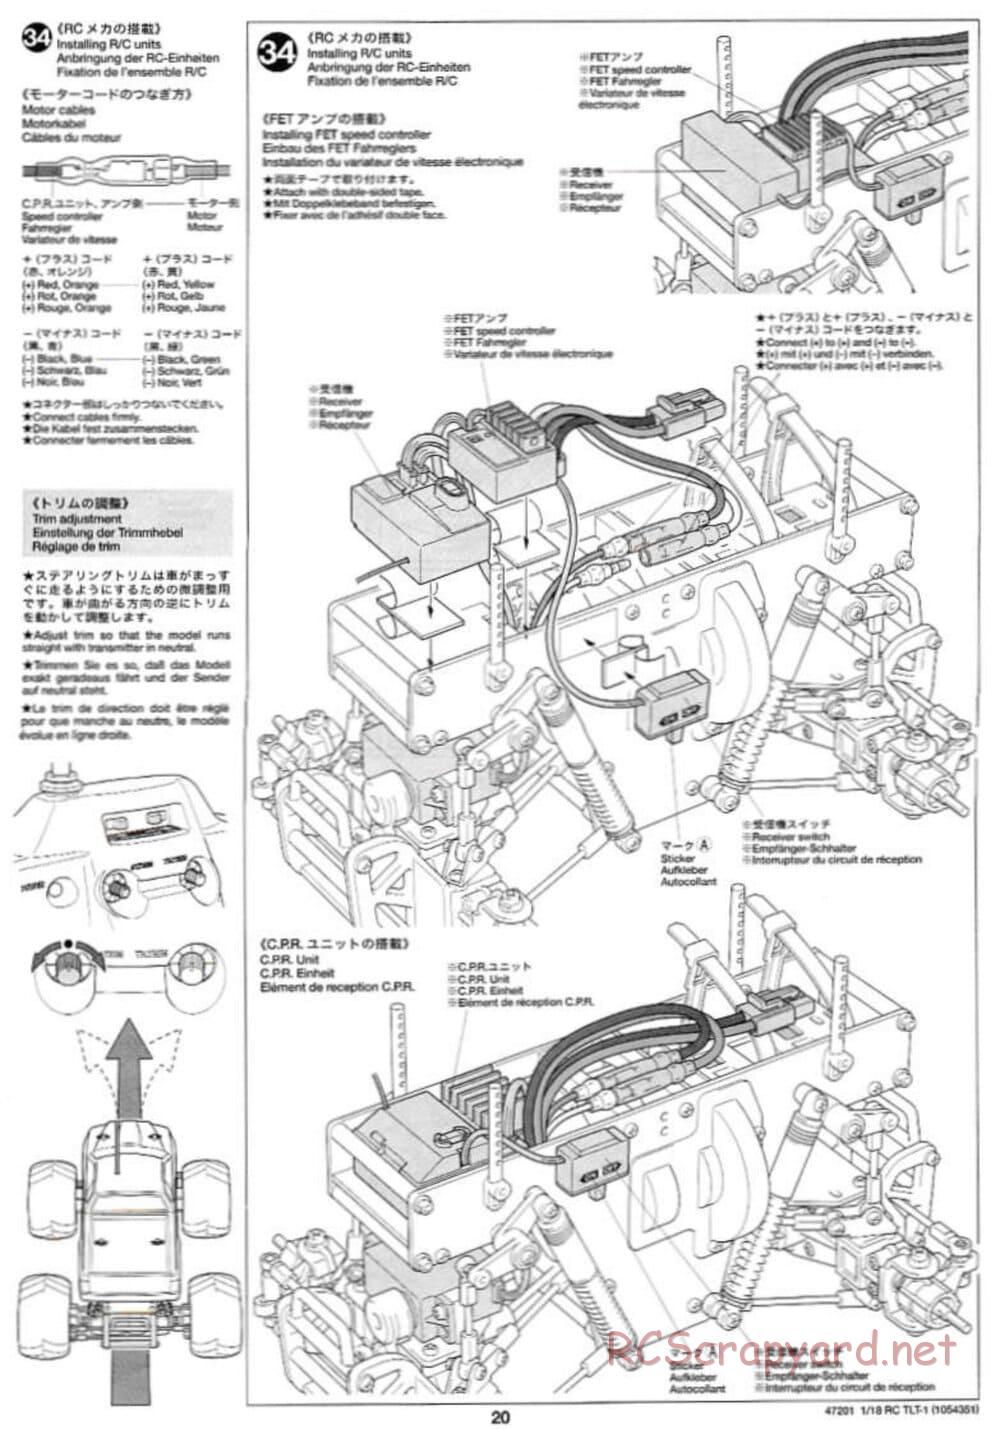 Tamiya - Rock Buster - TLT-1 Chassis - Manual - Page 20